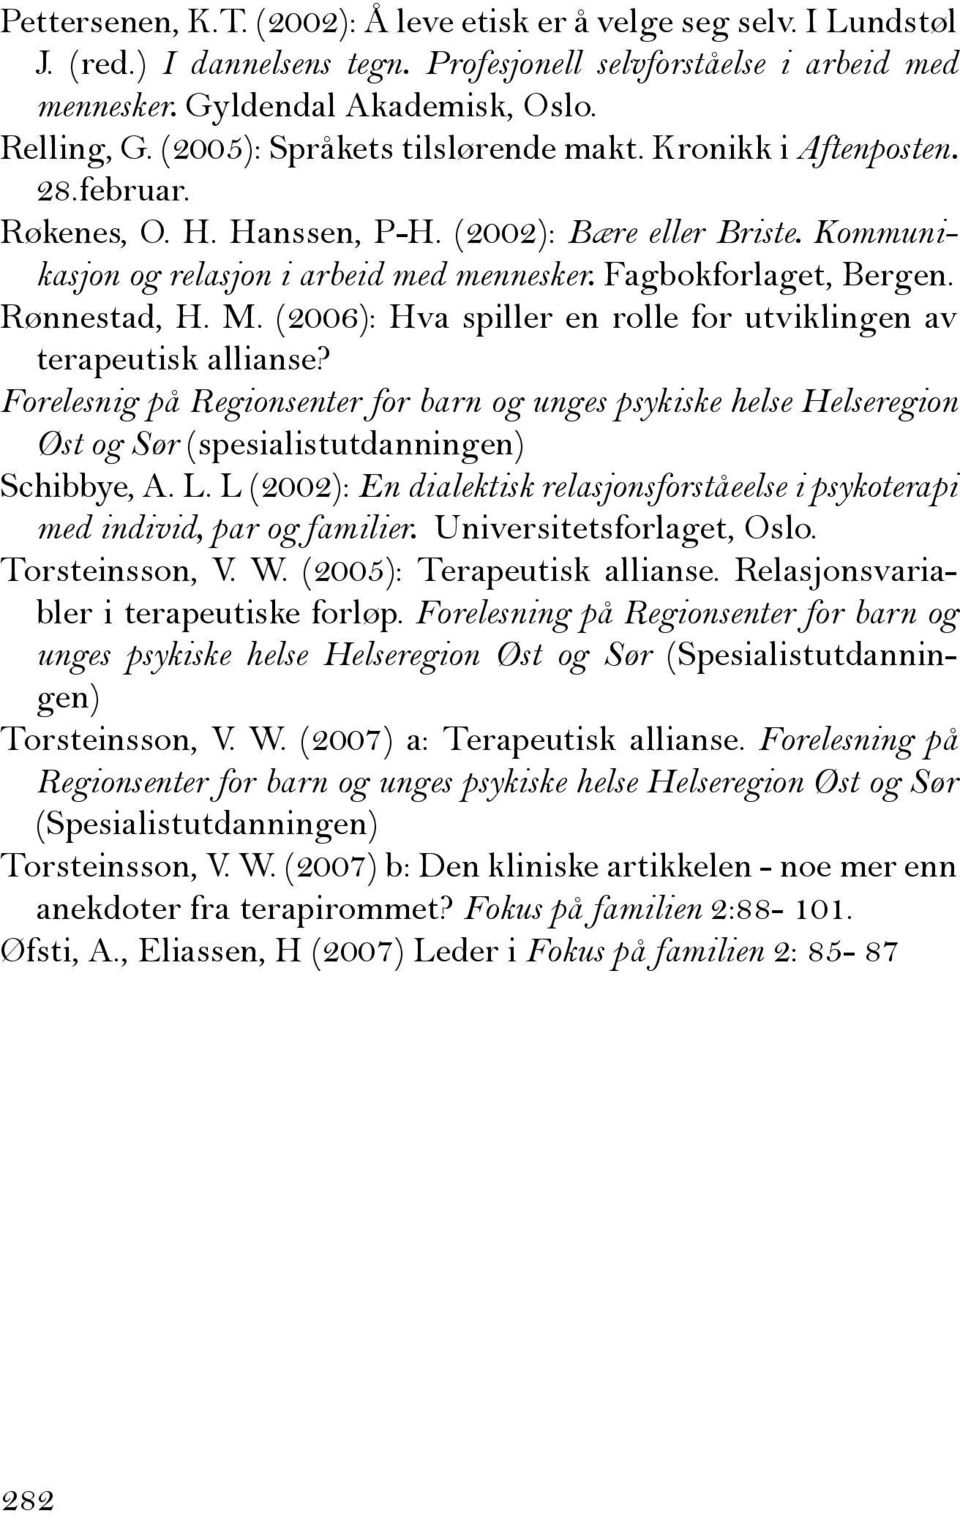 Rønnestad, H. M. (2006): Hva spiller en rolle for utviklingen av terapeutisk allianse?